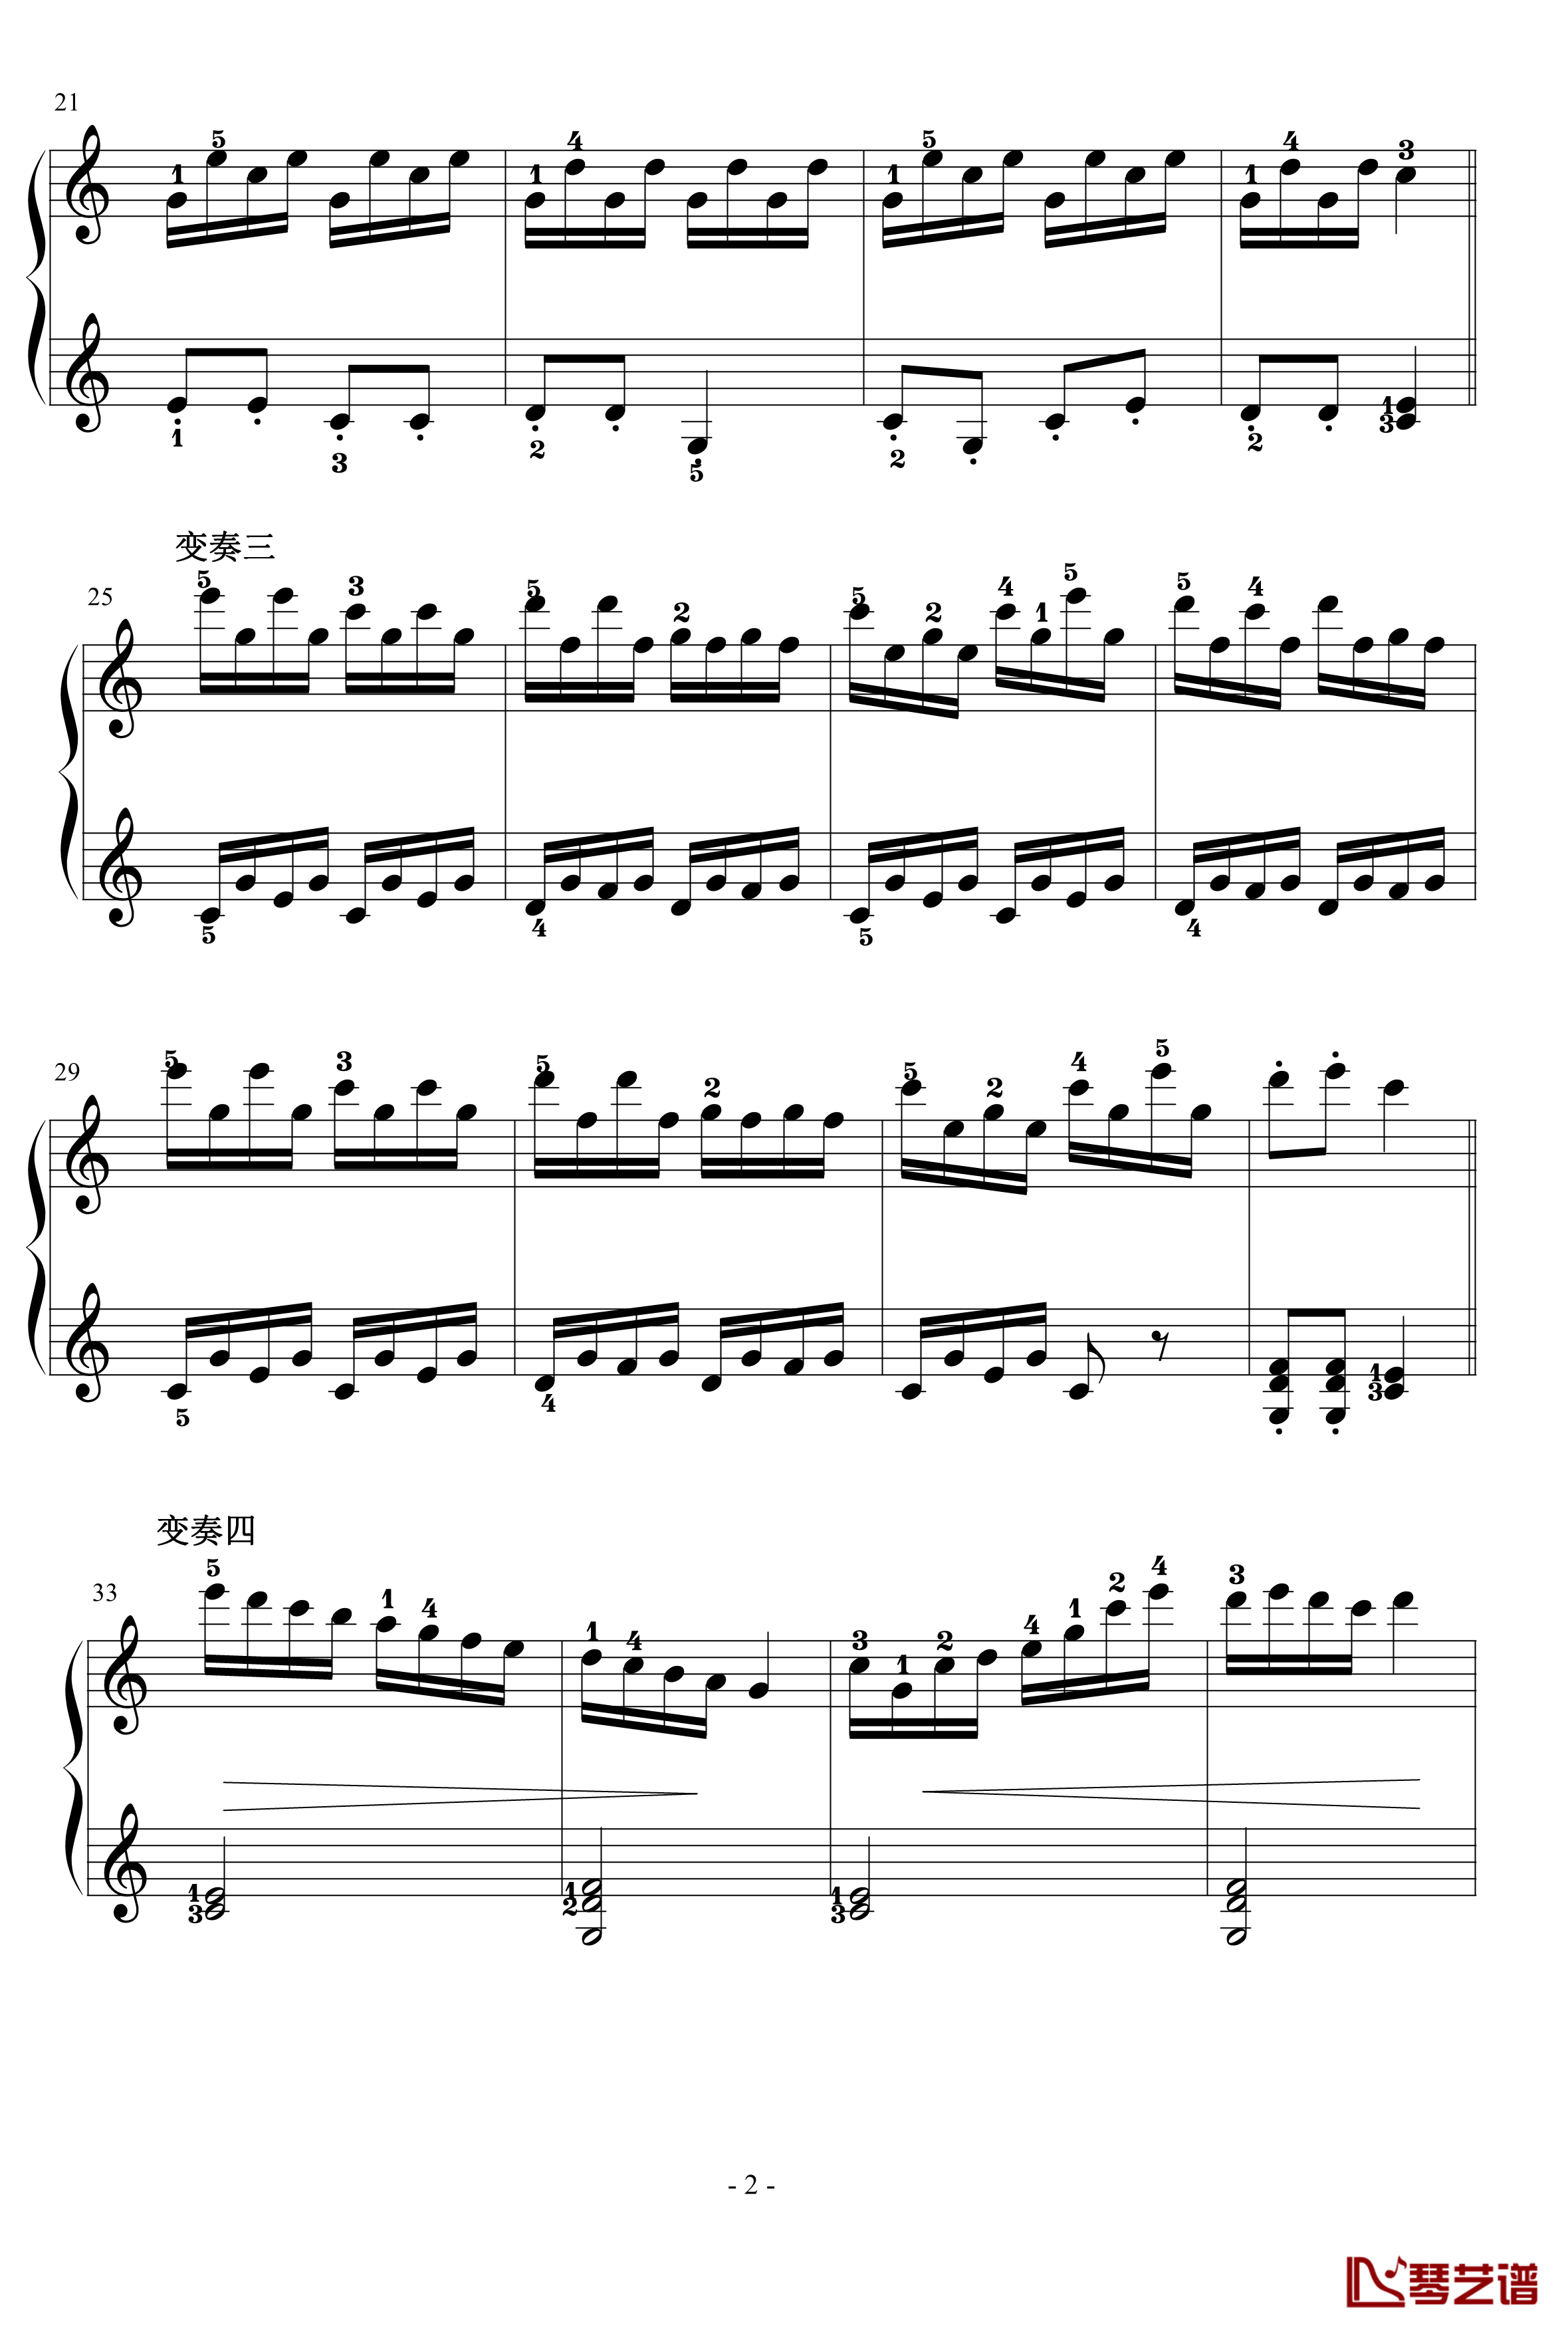 乒乓变奏曲钢琴谱-儿童歌曲2